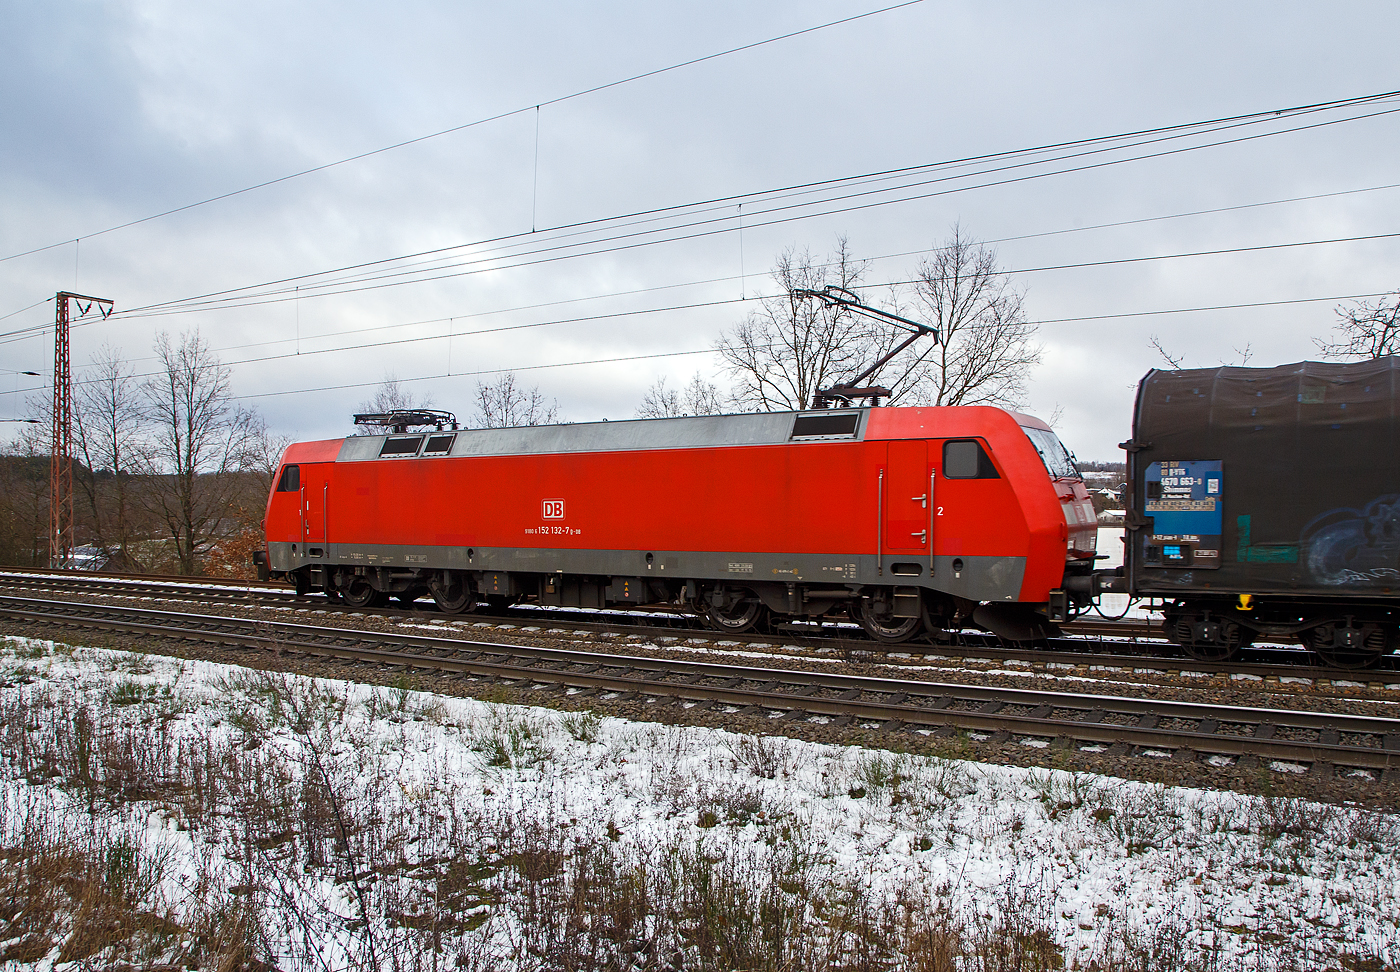 Die 152 132-7 (91 80 6152 132-7 D-DB) der DB Cargo AG am 27.01.2023  mit einem gemischten Güterzug, auf der Dillstrecke (KBS 445), durch Rudersdorf (Kr. Siegen) in Richtung Siegen bzw. Kreuztal.

Die Siemens ES 64 F wurde 2000 von Siemens in München-Allach unter der Fabriknummer 20259 gebaut und an die DB Cargo geliefert.
